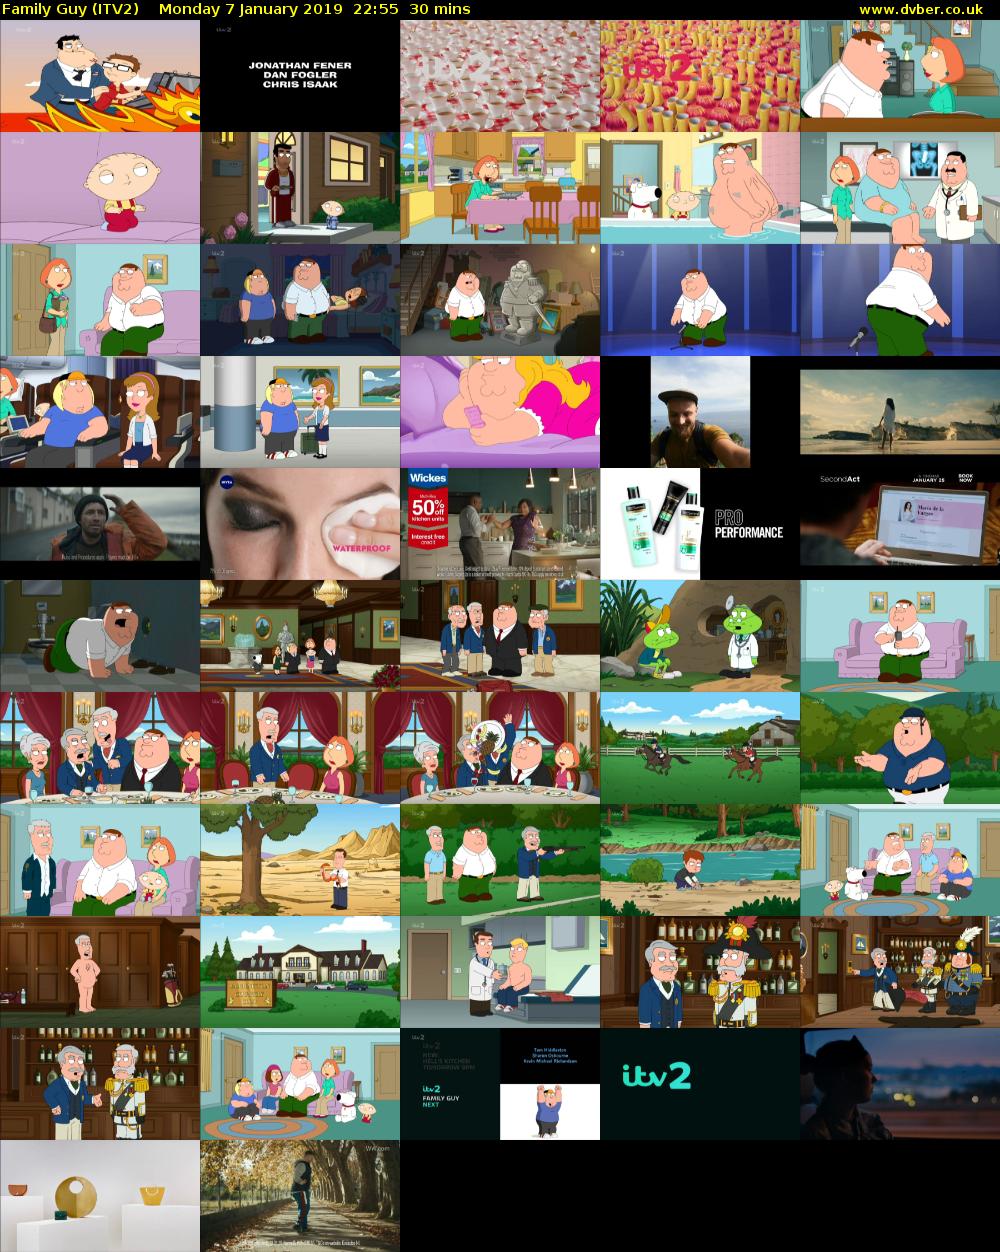 Family Guy (ITV2) Monday 7 January 2019 22:55 - 23:25